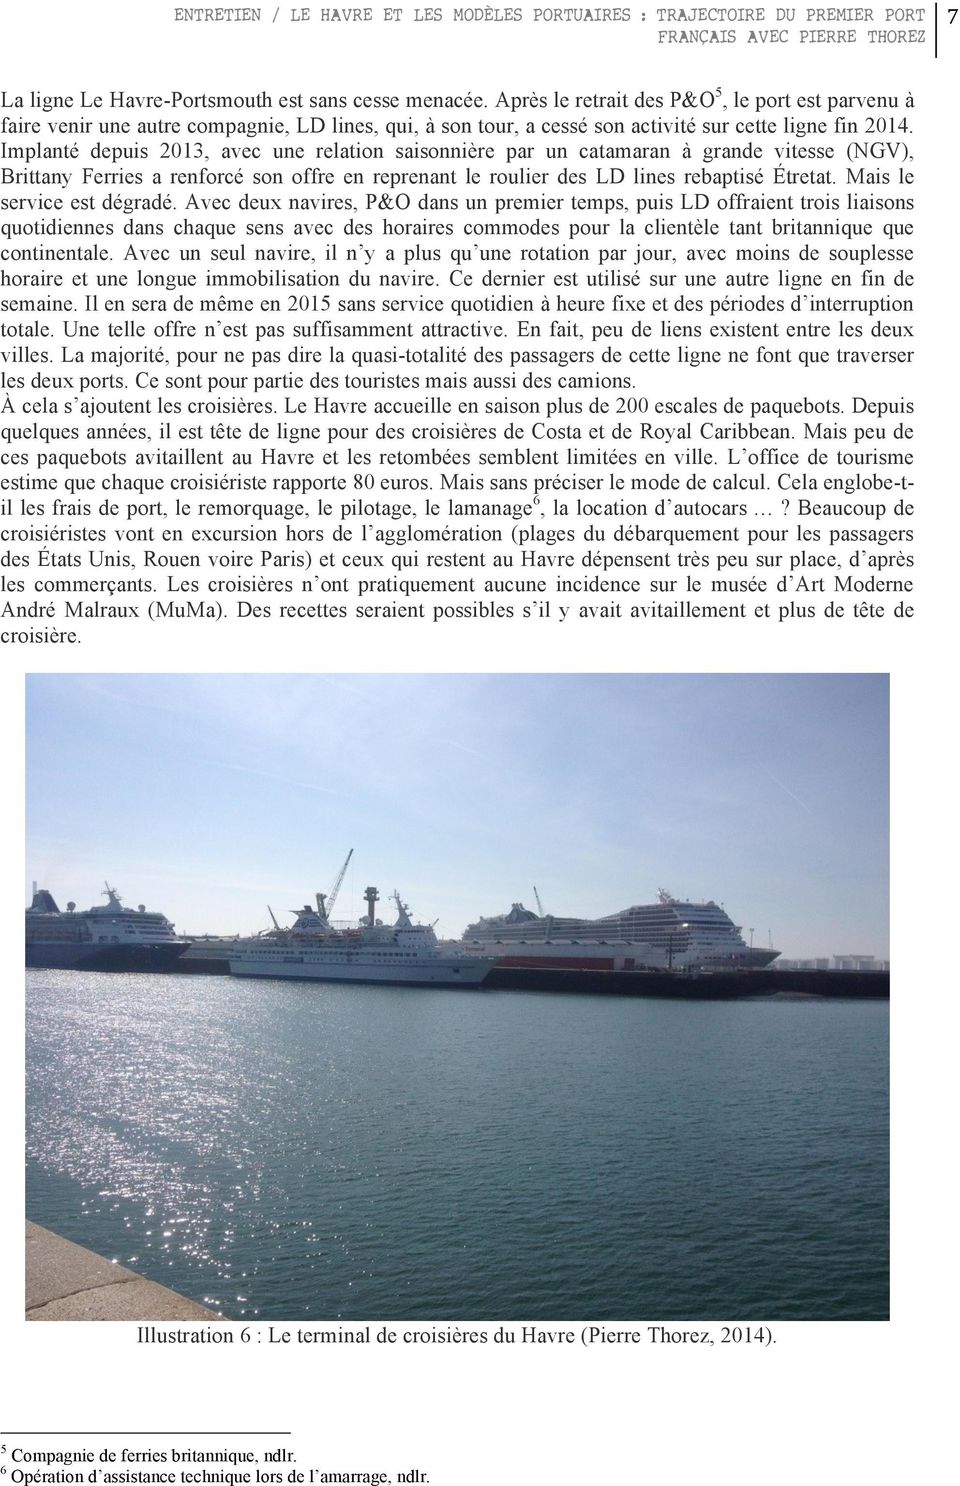 Implanté depuis 2013, avec une relation saisonnière par un catamaran à grande vitesse (NGV), Brittany Ferries a renforcé son offre en reprenant le roulier des LD lines rebaptisé Étretat.